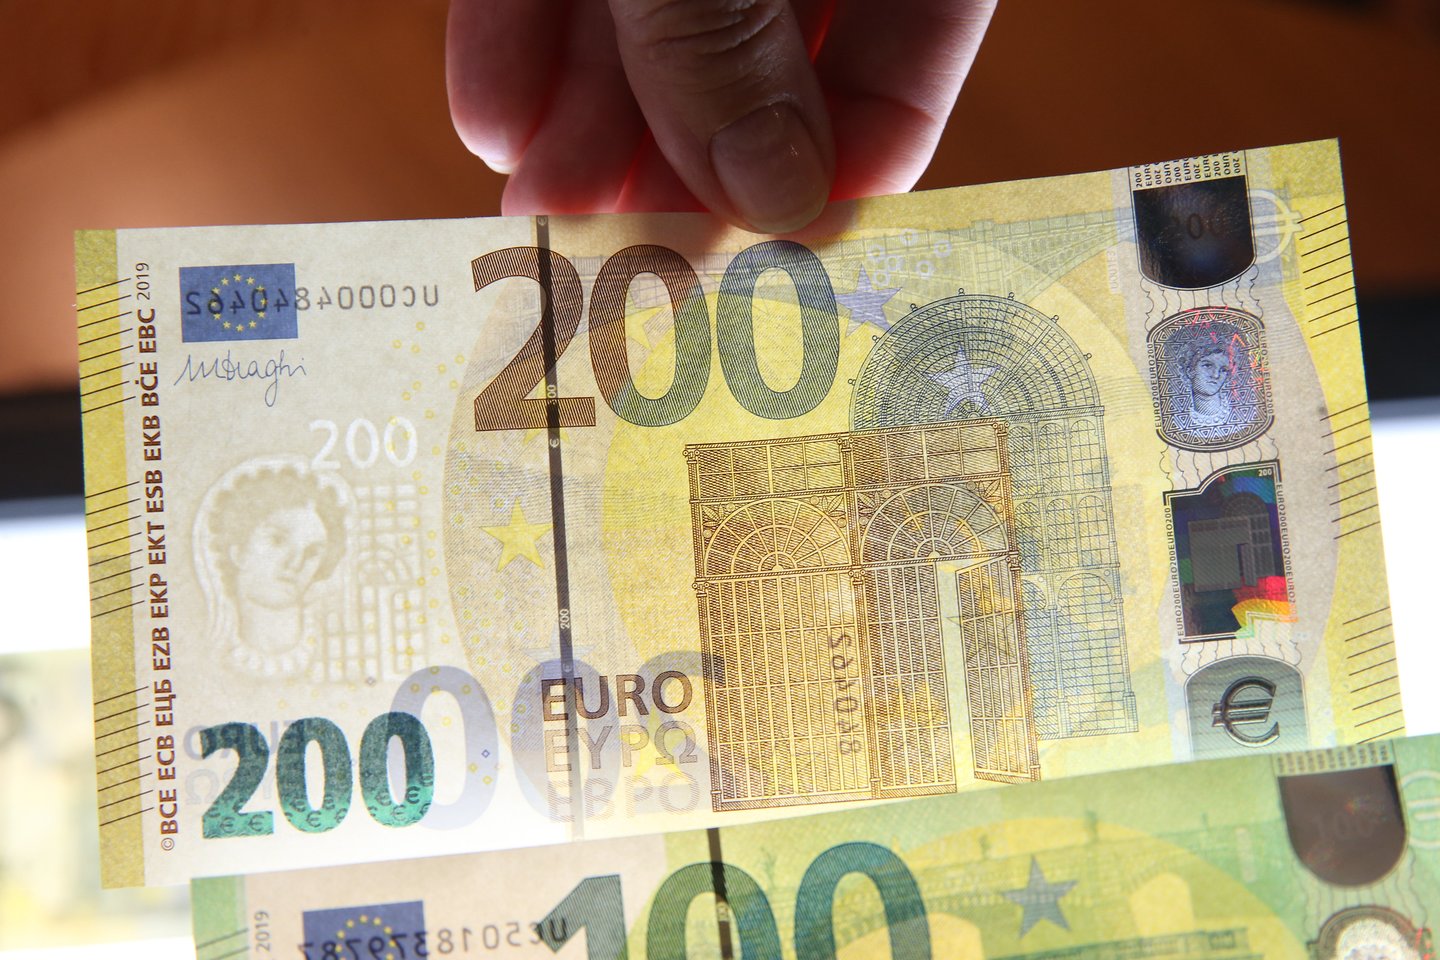 100 eurų banknotas yra ketvirtas pagal populiarumą Lietuvoje. <br> R.Danisevičiaus nuotr. 